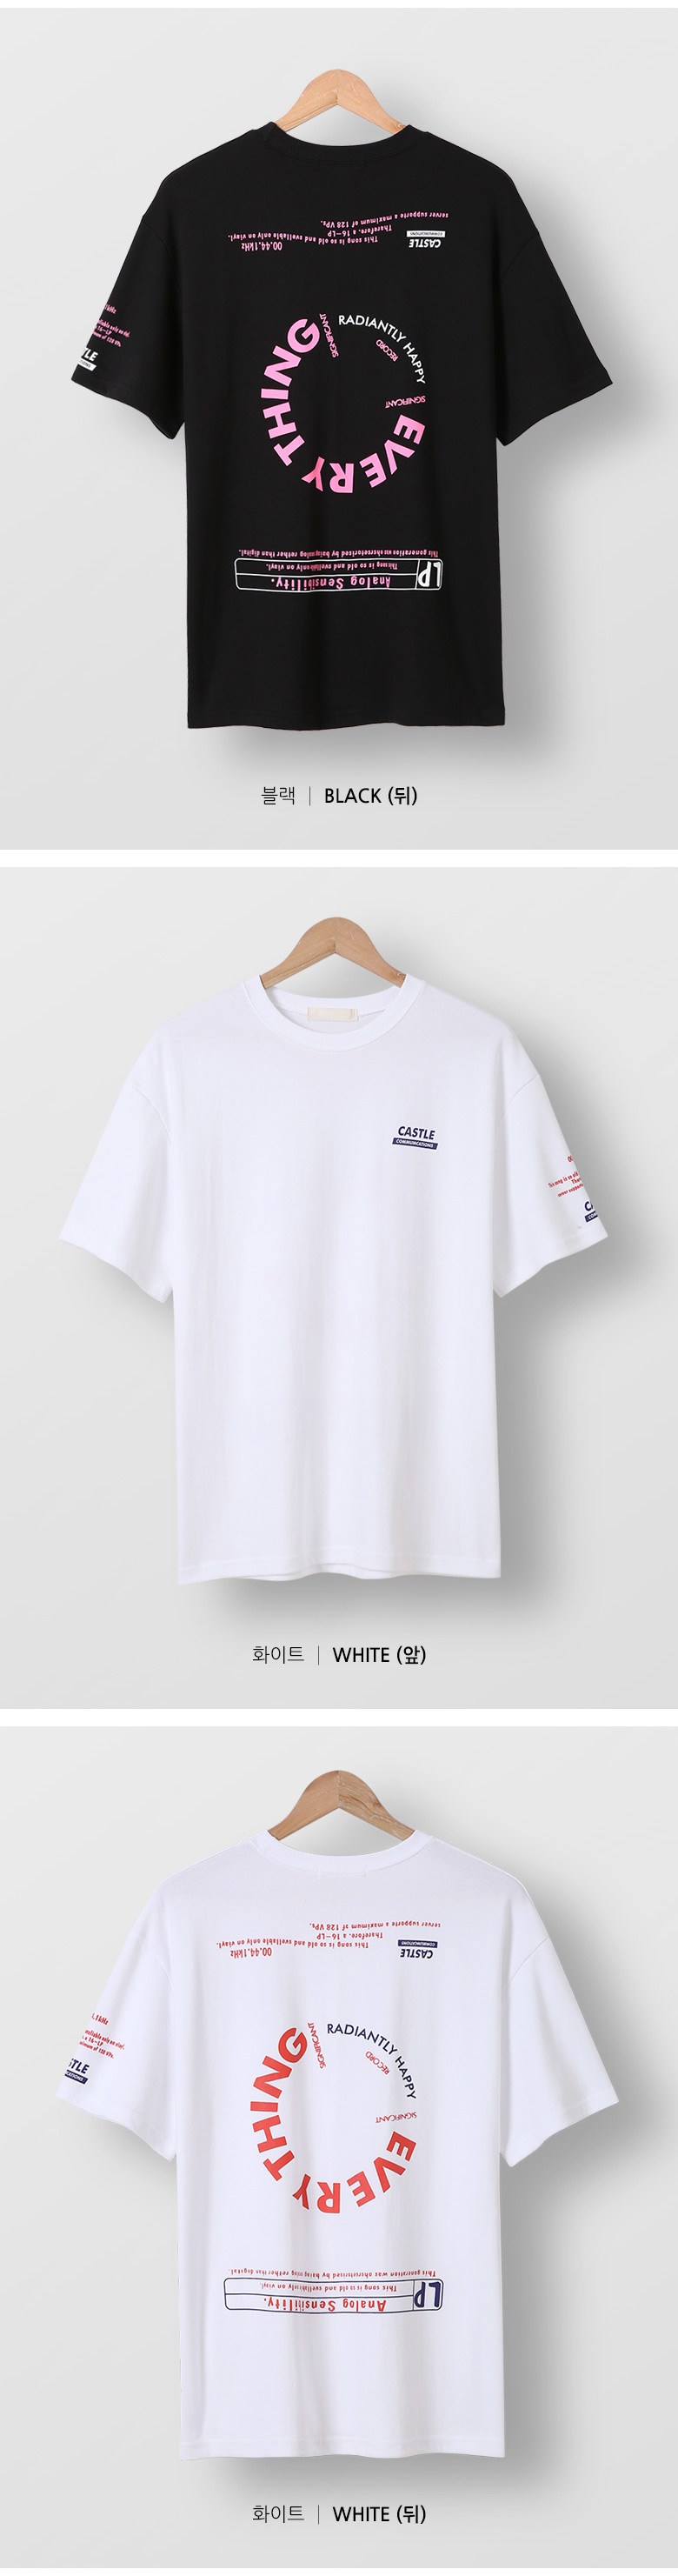 단군 남성용 에브리띵 그래픽 나염 오버핏 반팔 티셔츠